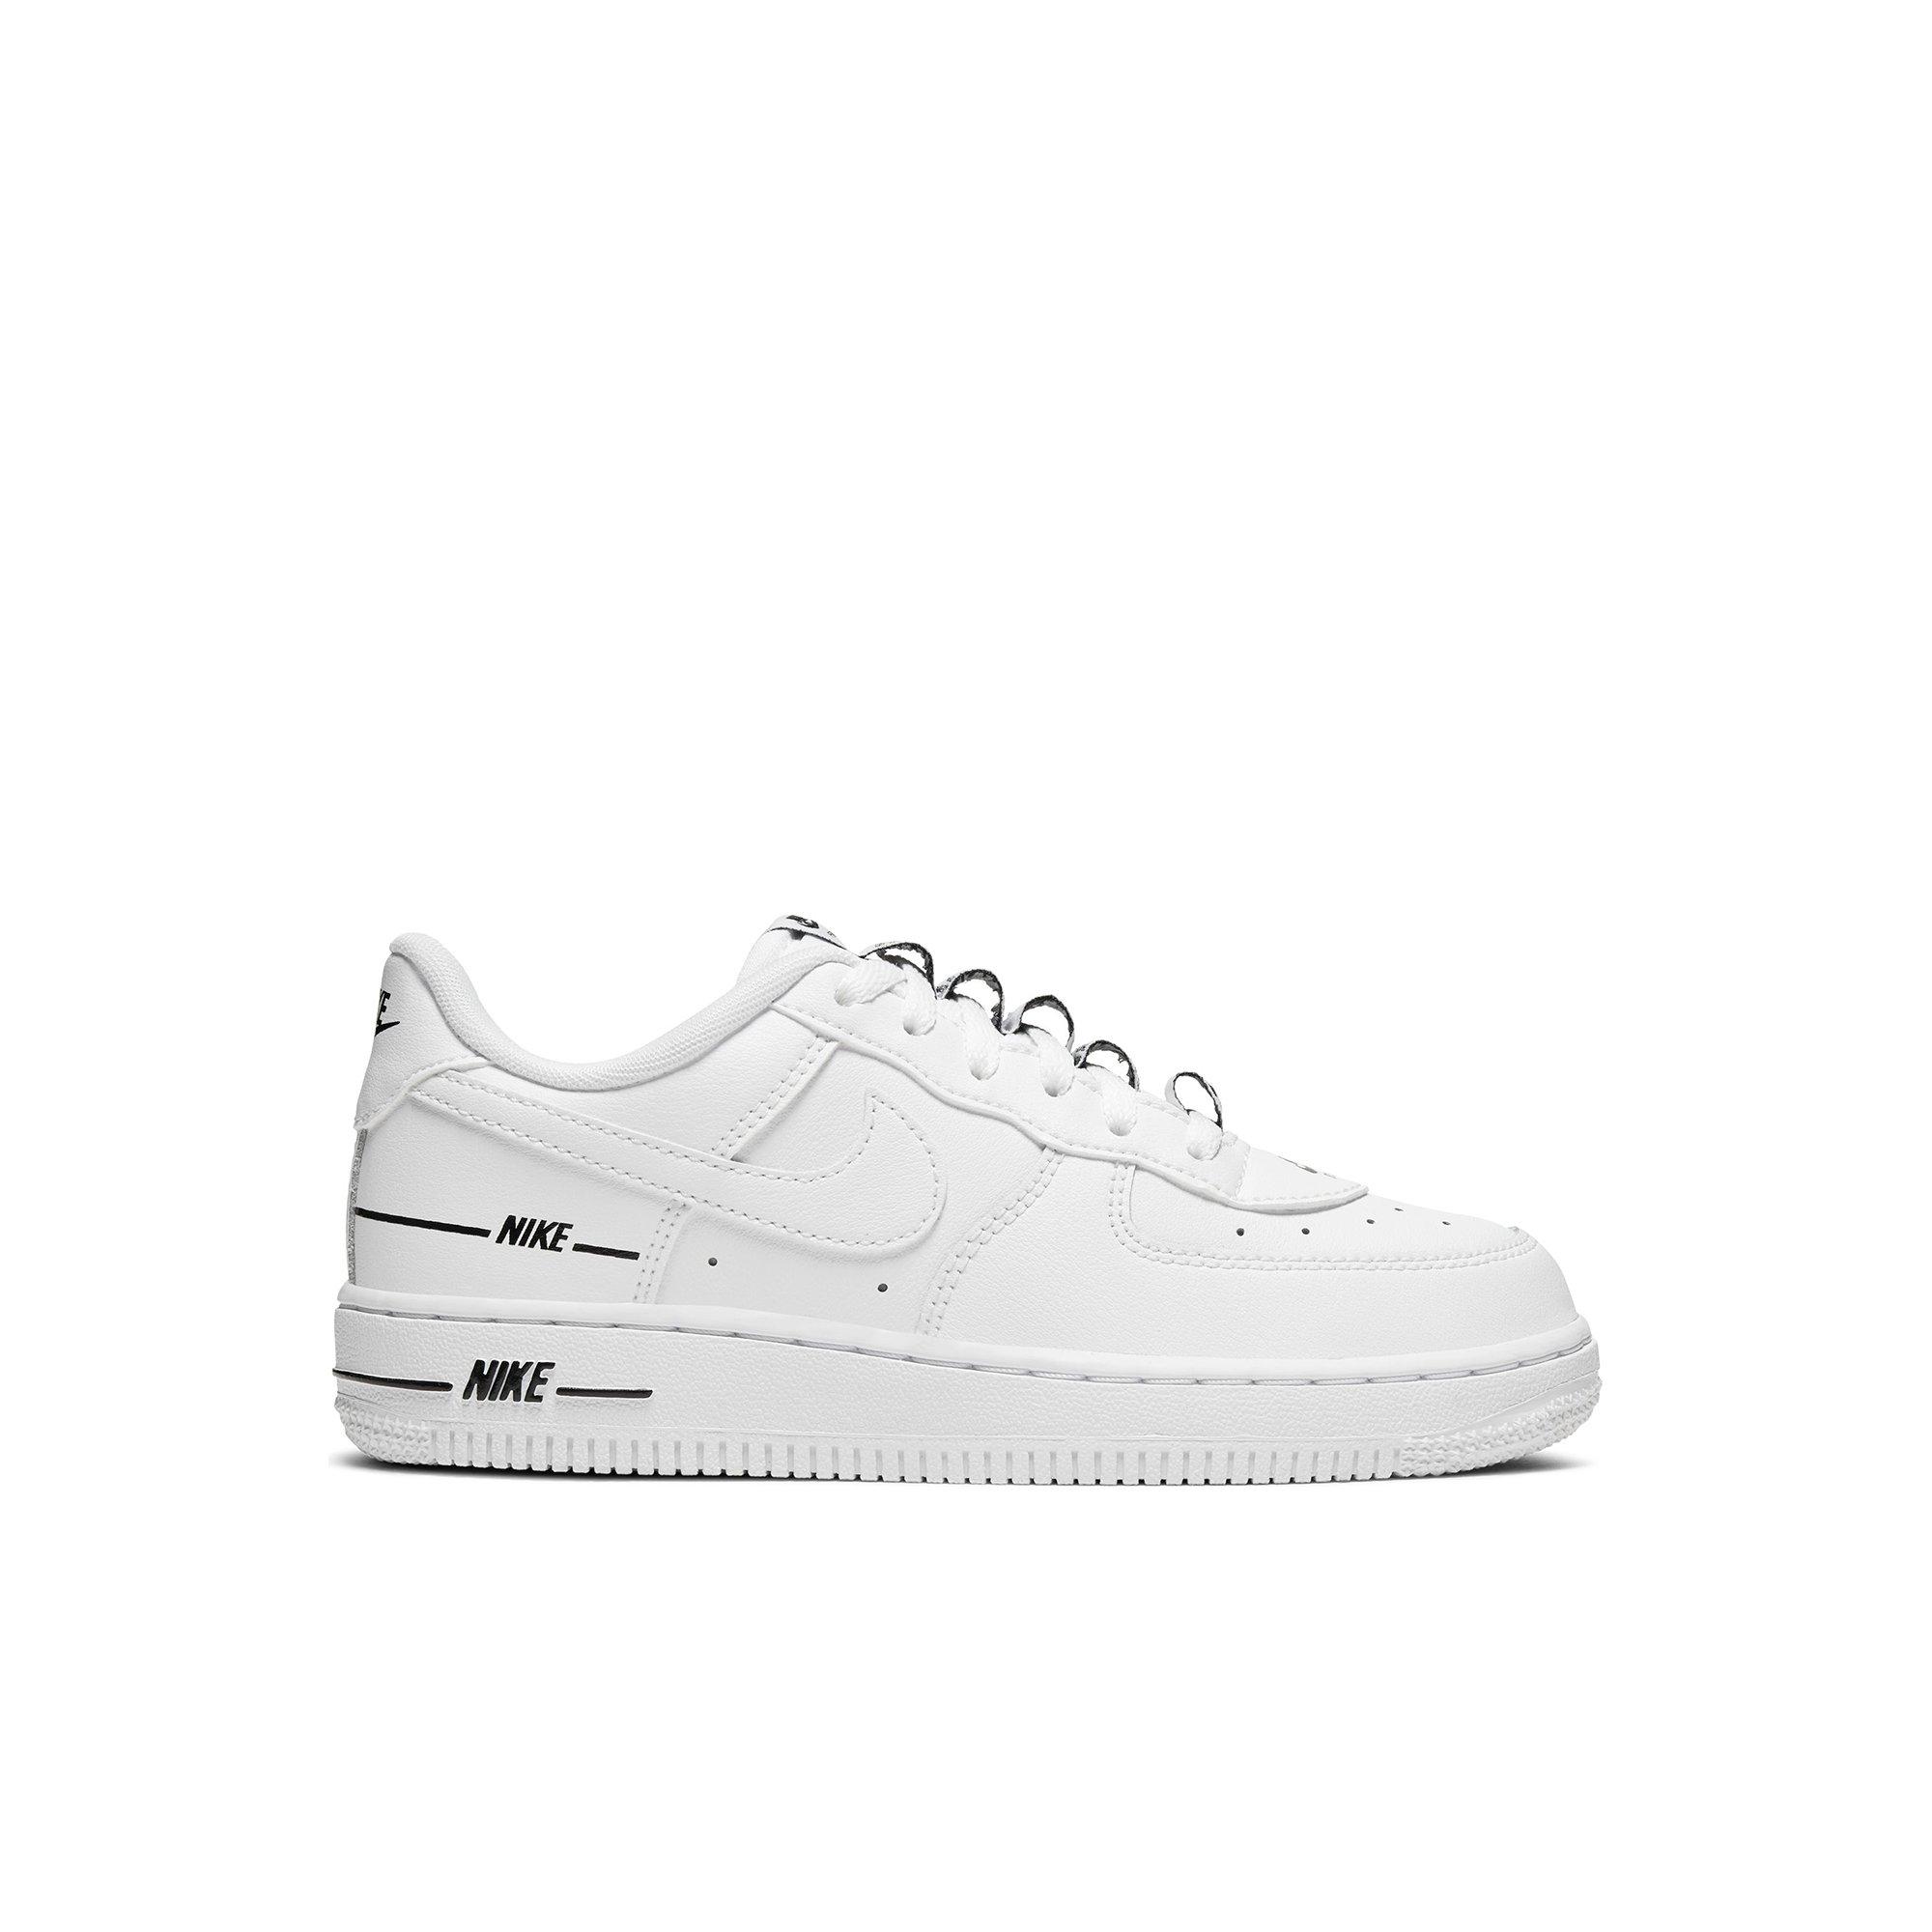 Nike Air Force 1 LV8 3 White/Black Preschool Boys' Shoe - Hibbett